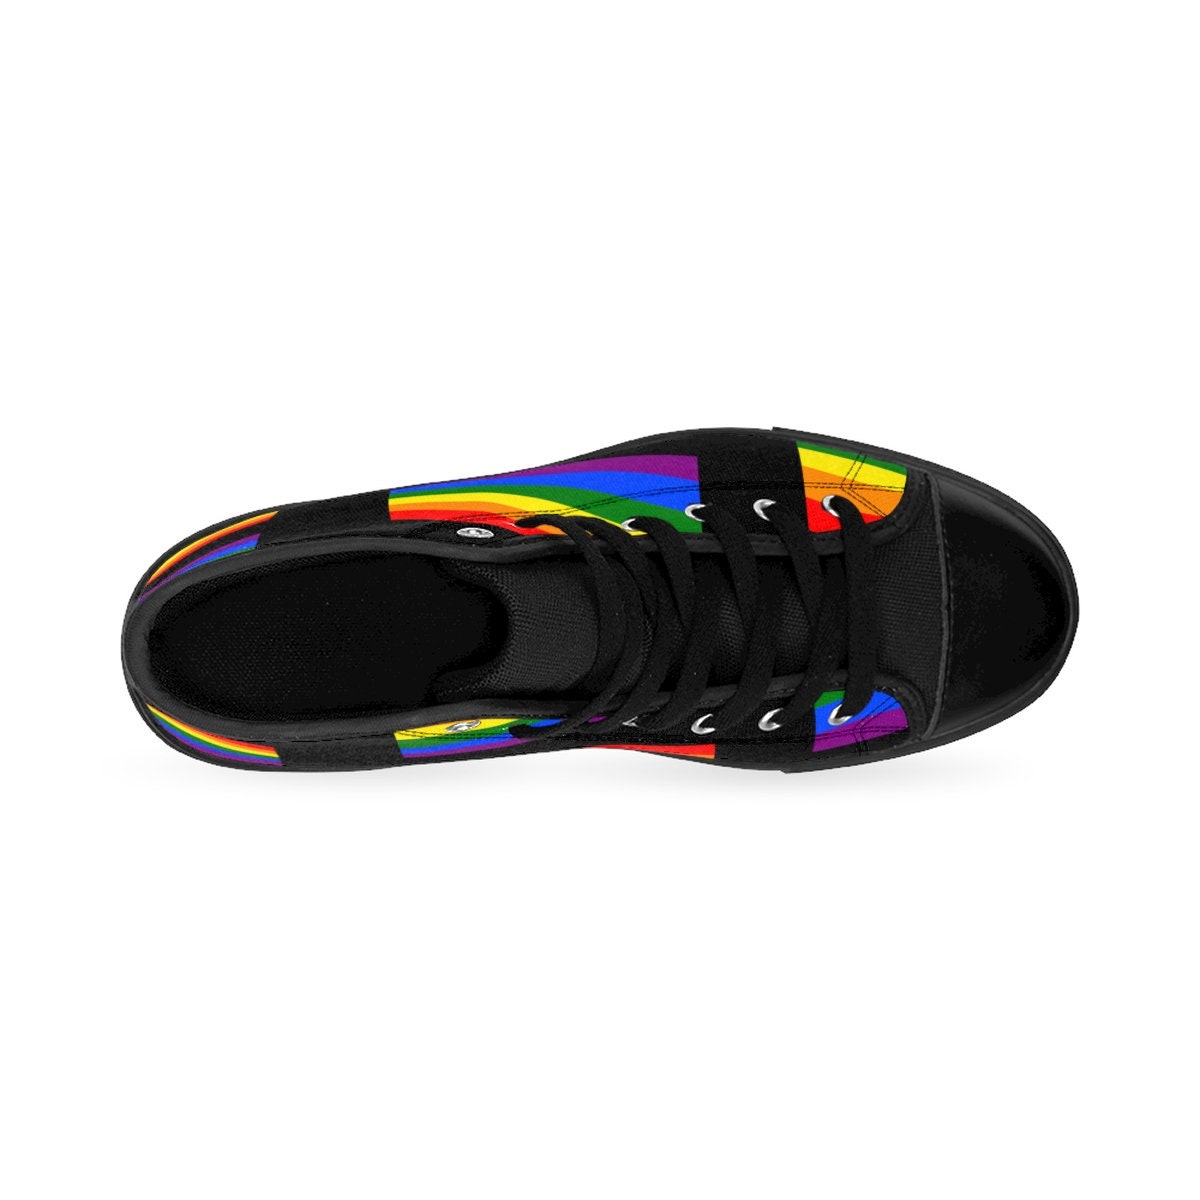 Schoenen Meisjesschoenen Sneakers & Sportschoenen LGBTQ Gay Pride parade regenboog vlag USA MenS HighTop sneakers 